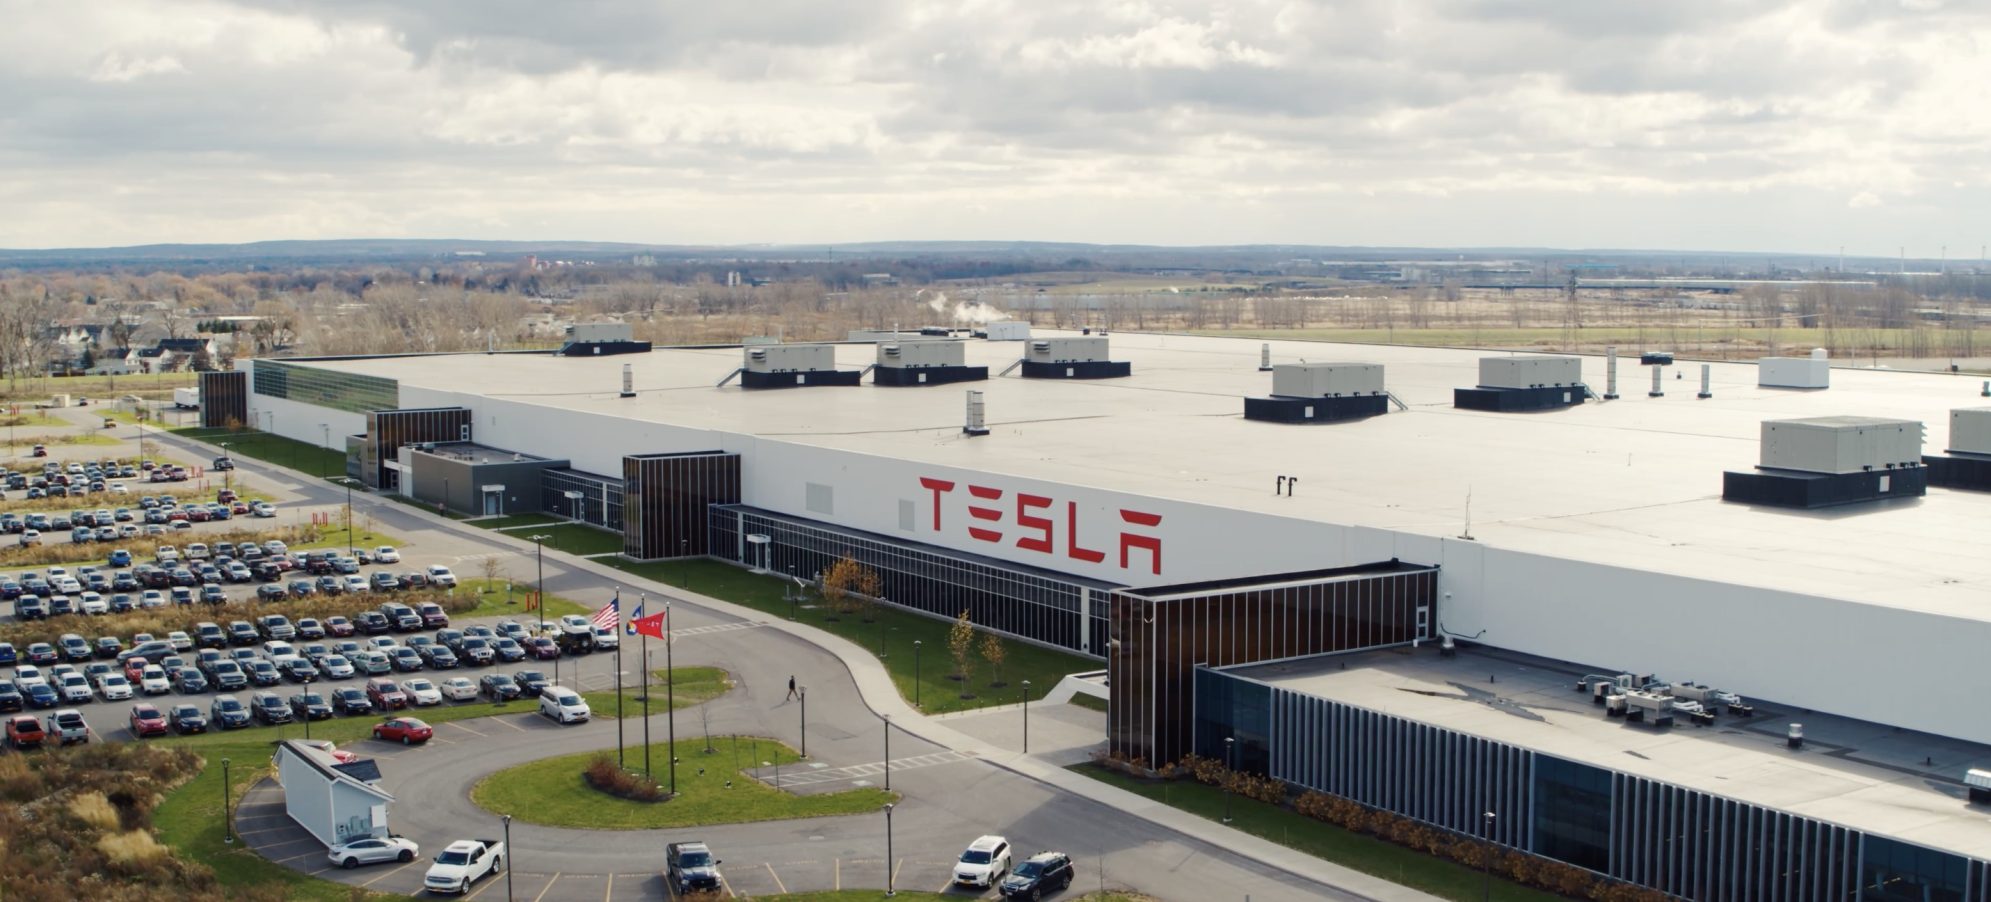 Une possible fuite « massive » de données de Tesla examinée par un organisme de surveillance néerlandais